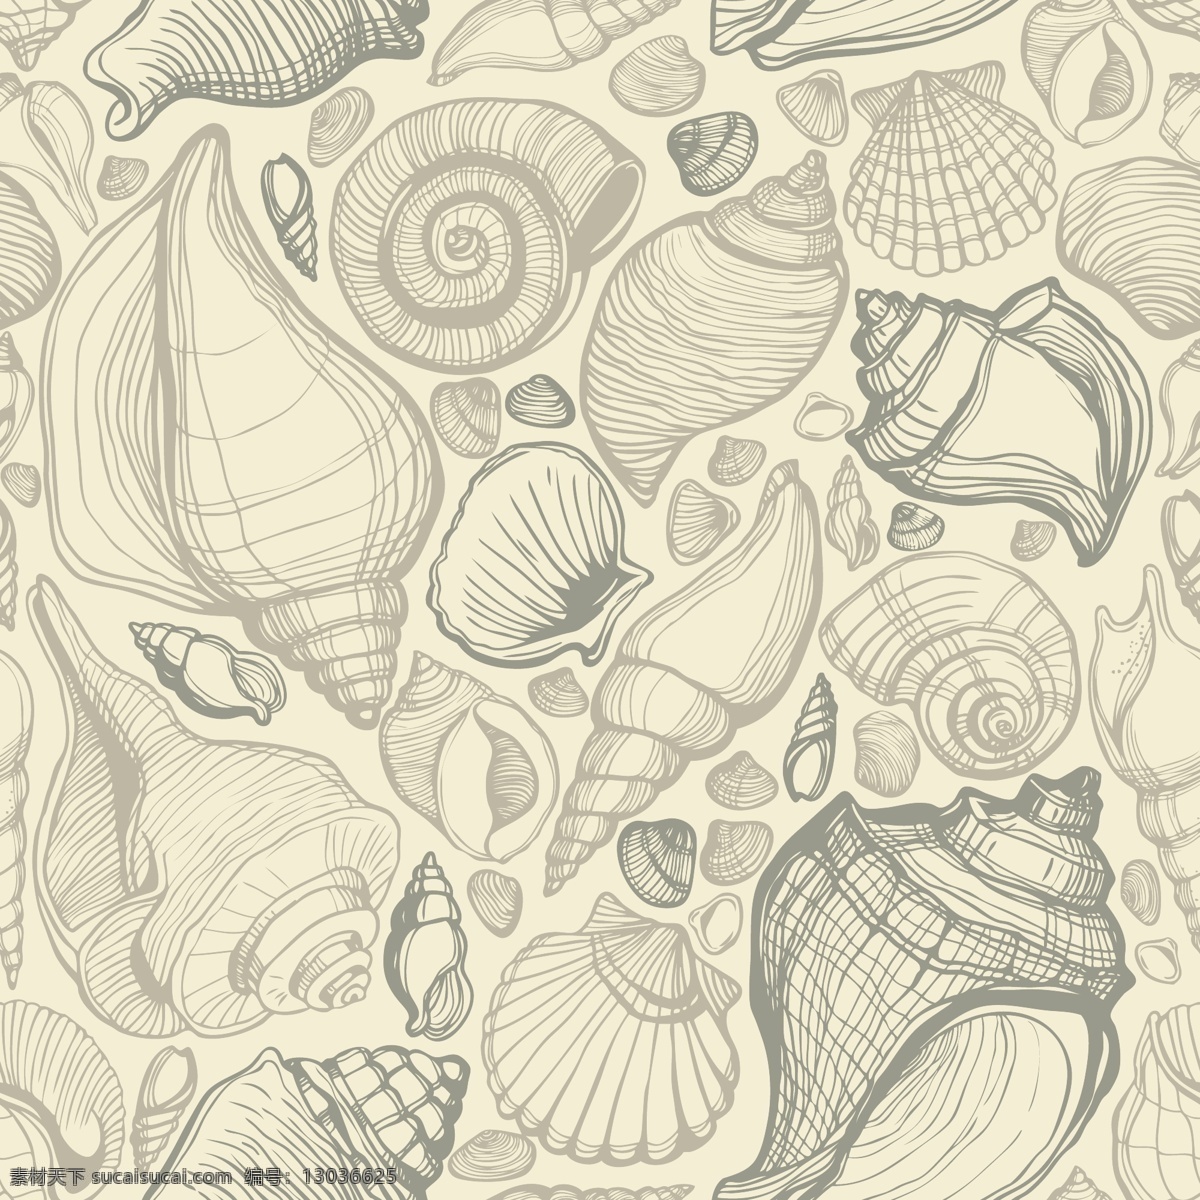 手绘 海洋生物 背景 海螺 贝壳 怀旧 海洋 生物 矢量 生物世界